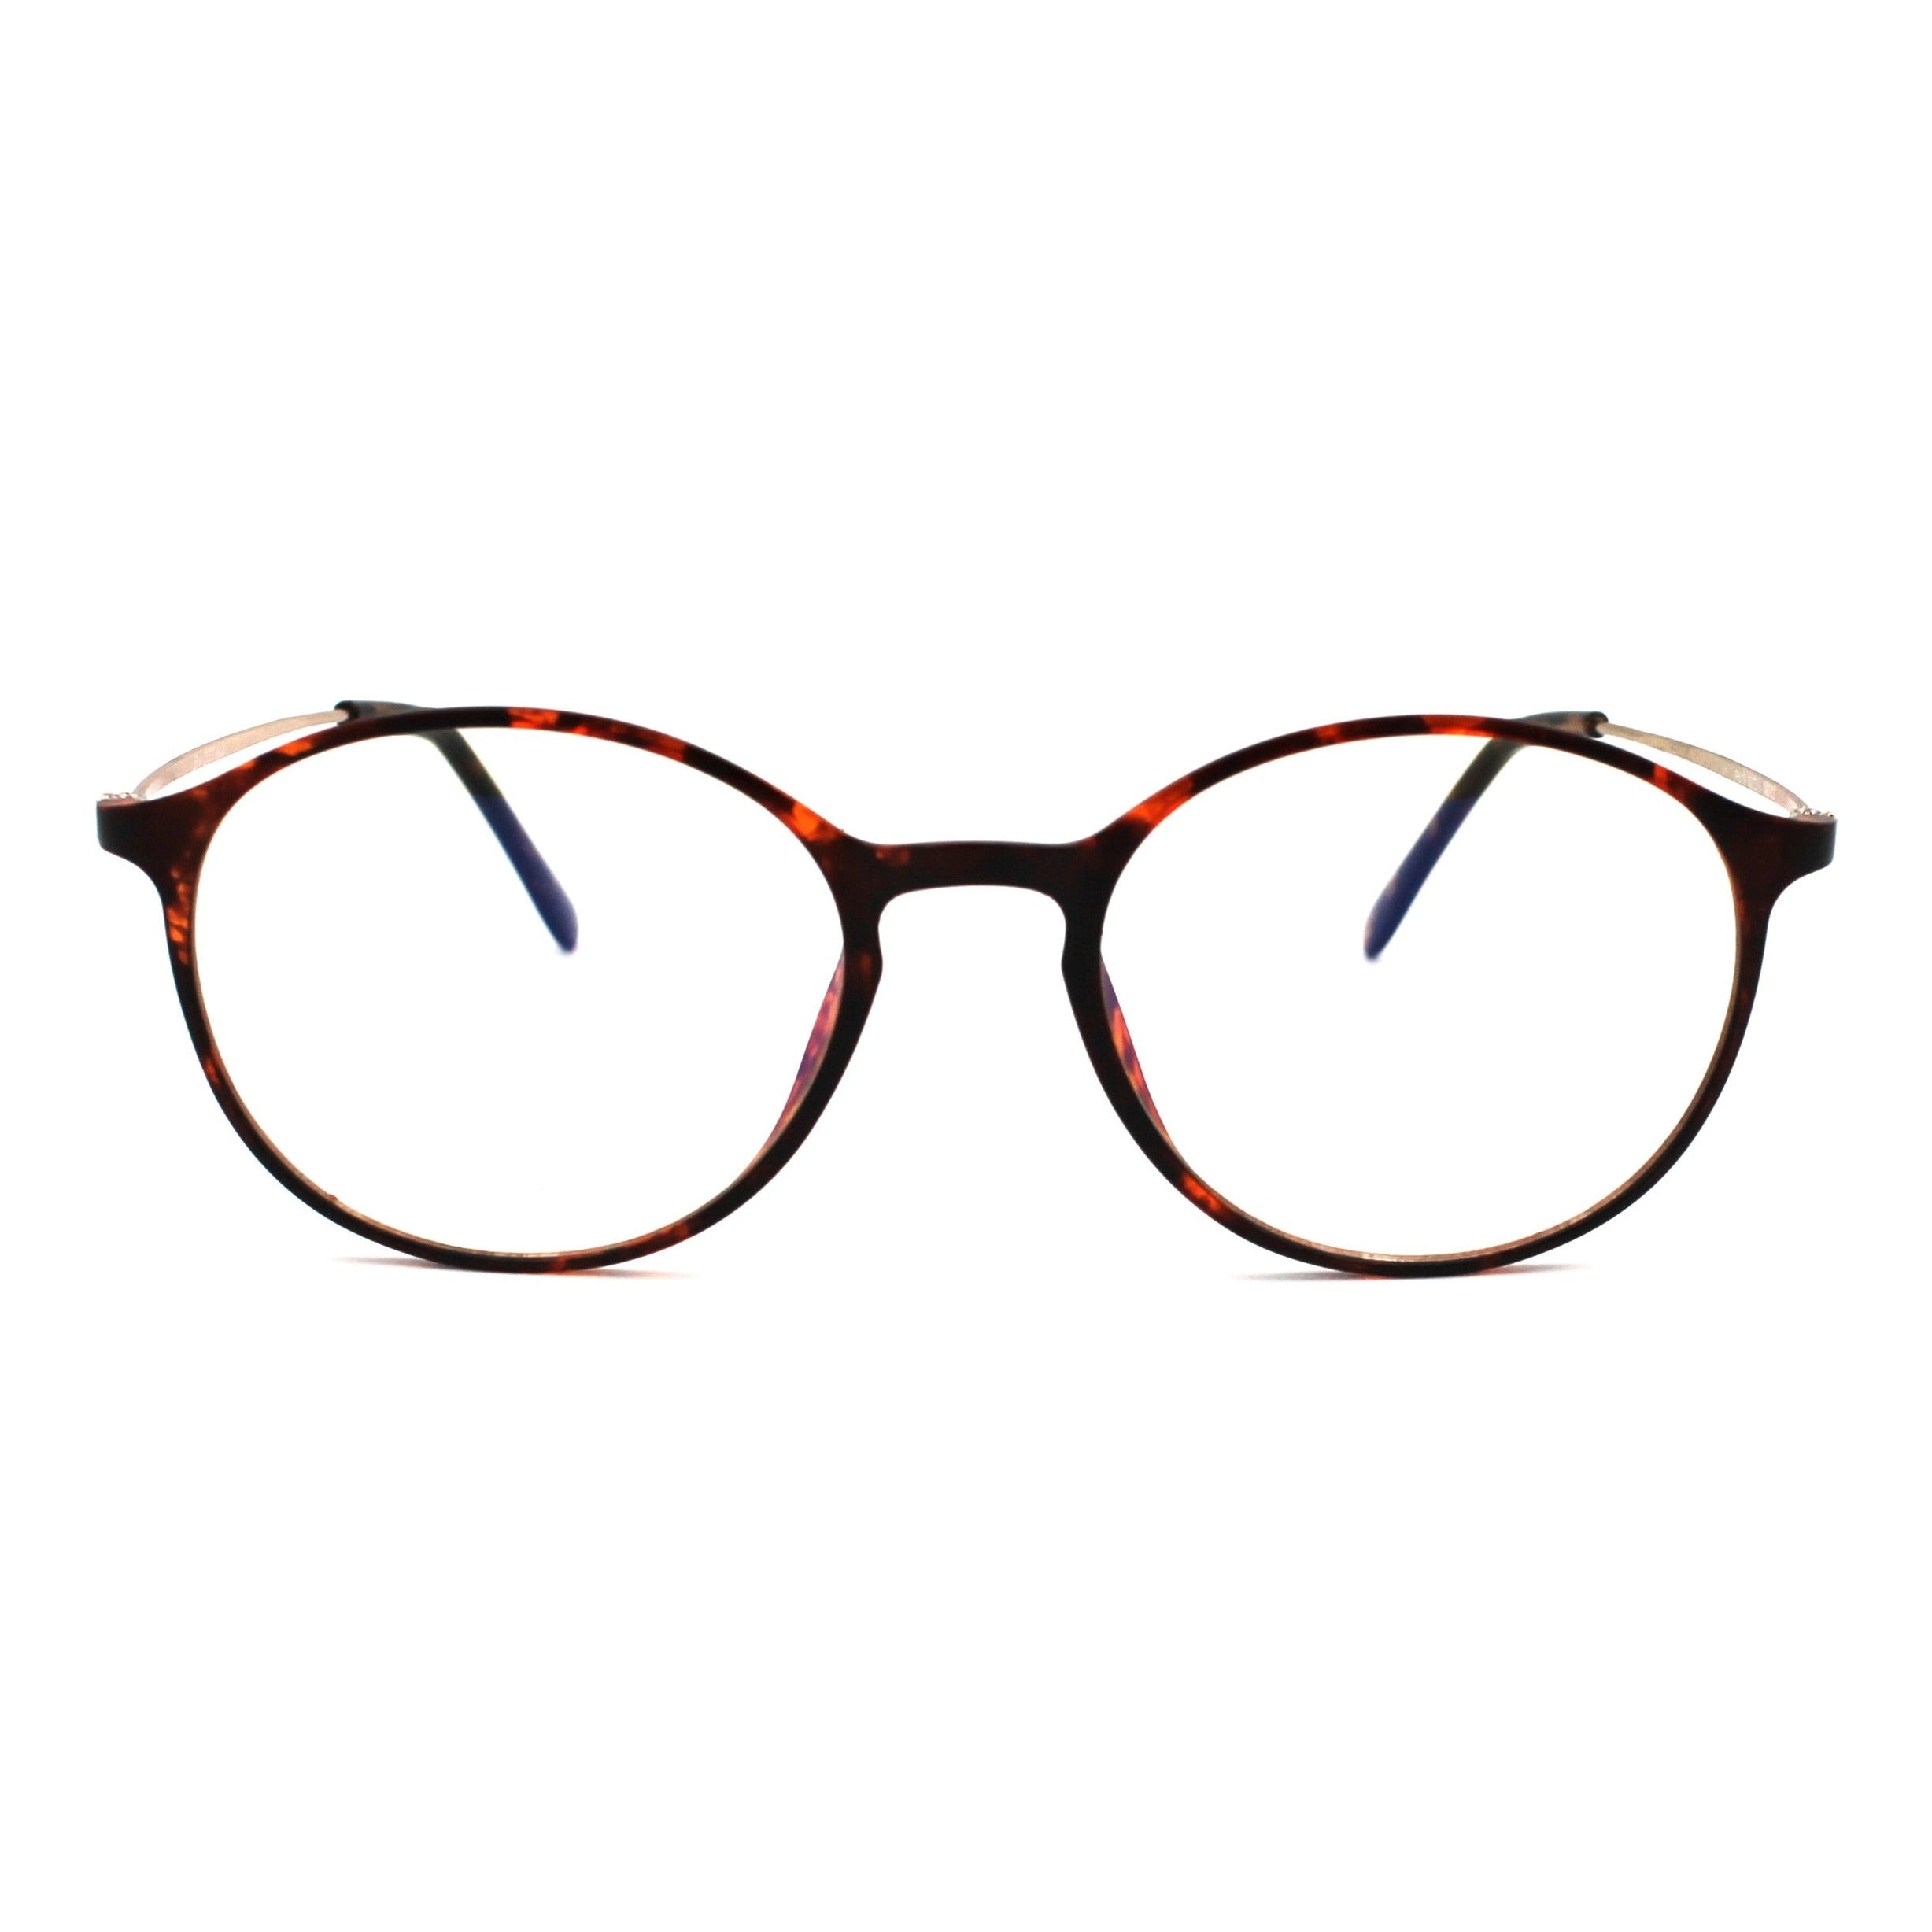 Ottika Care - Blue Light Blocking Glasses - Adult | Model R619